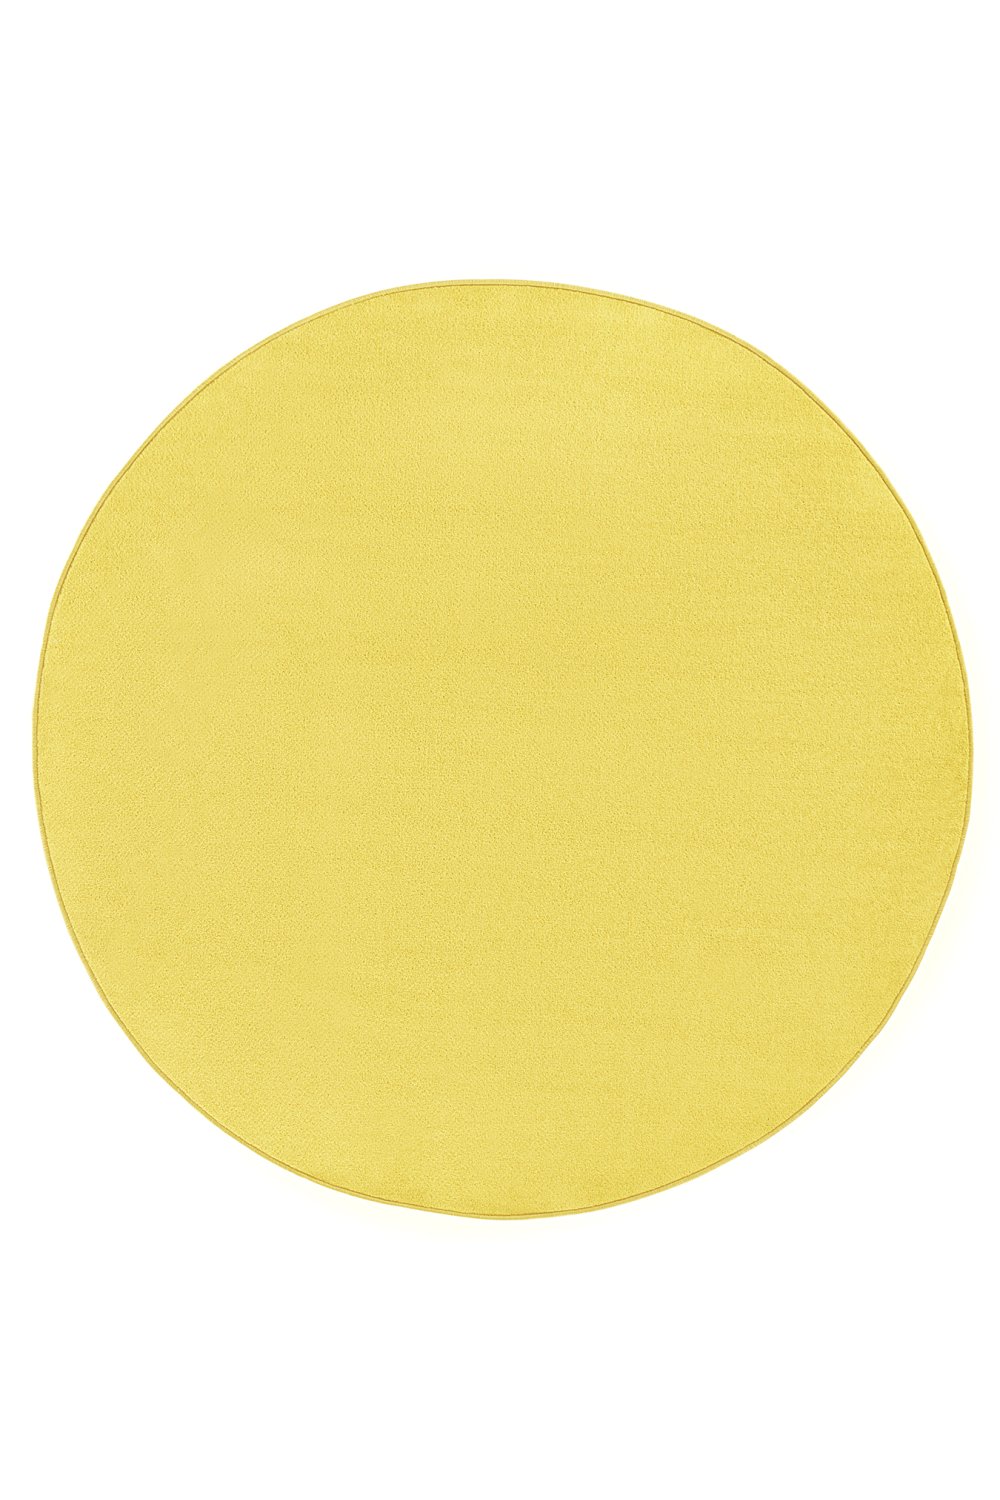 Dywan Jednokolorowy Fancy Okrągły 103002 Yellow